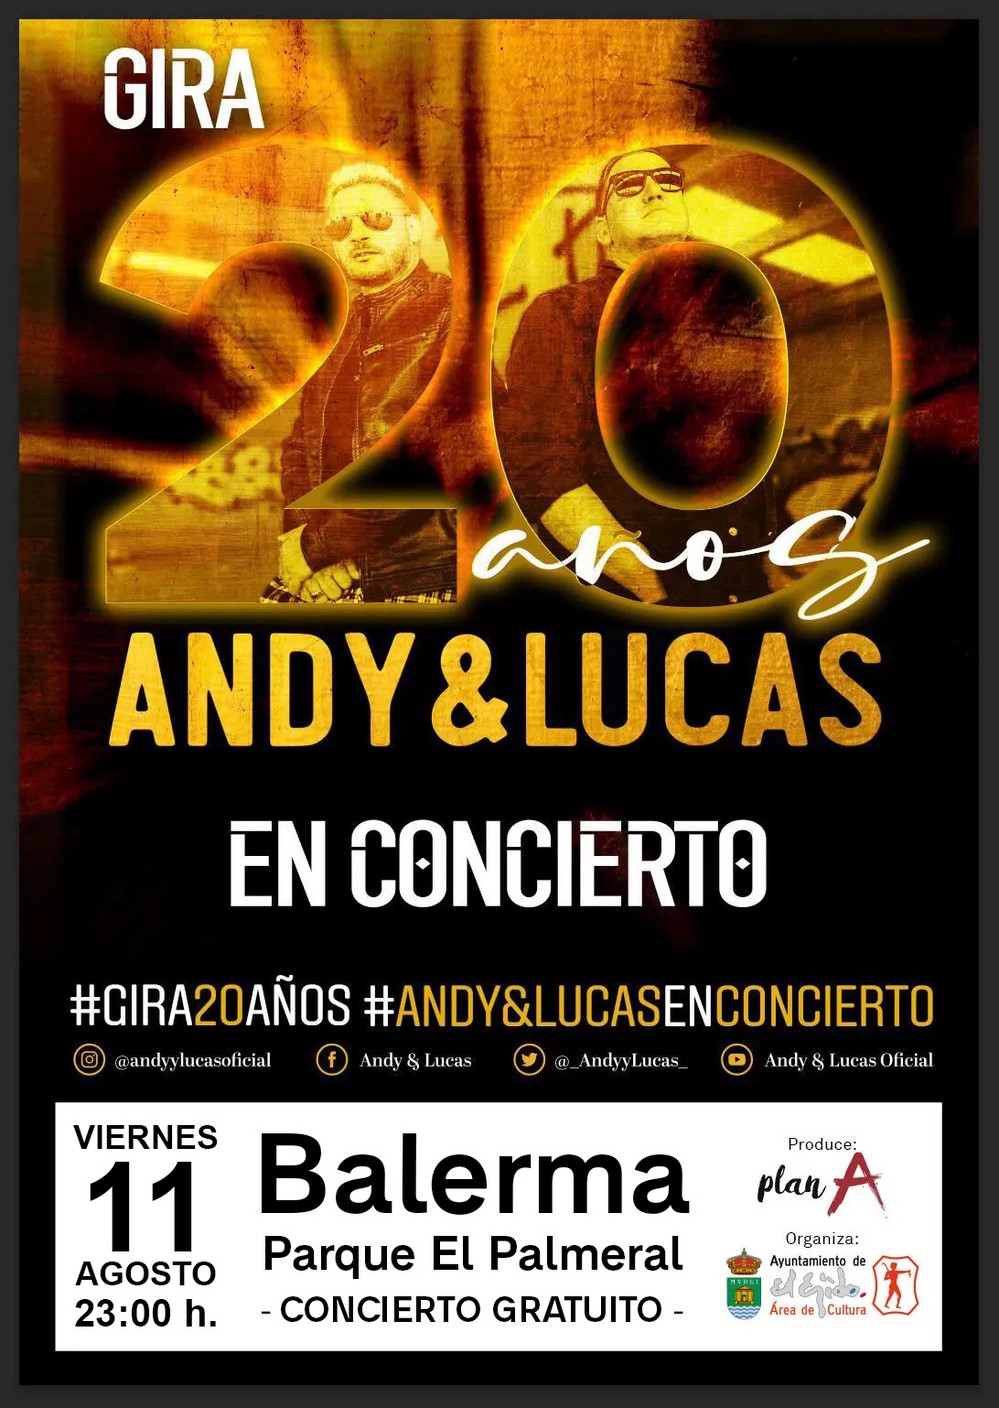 El dúo ‘Andy y Lucas’ actuará gratis este viernes en el Parque El Palmeral de Balerma con su gira ‘20 años’